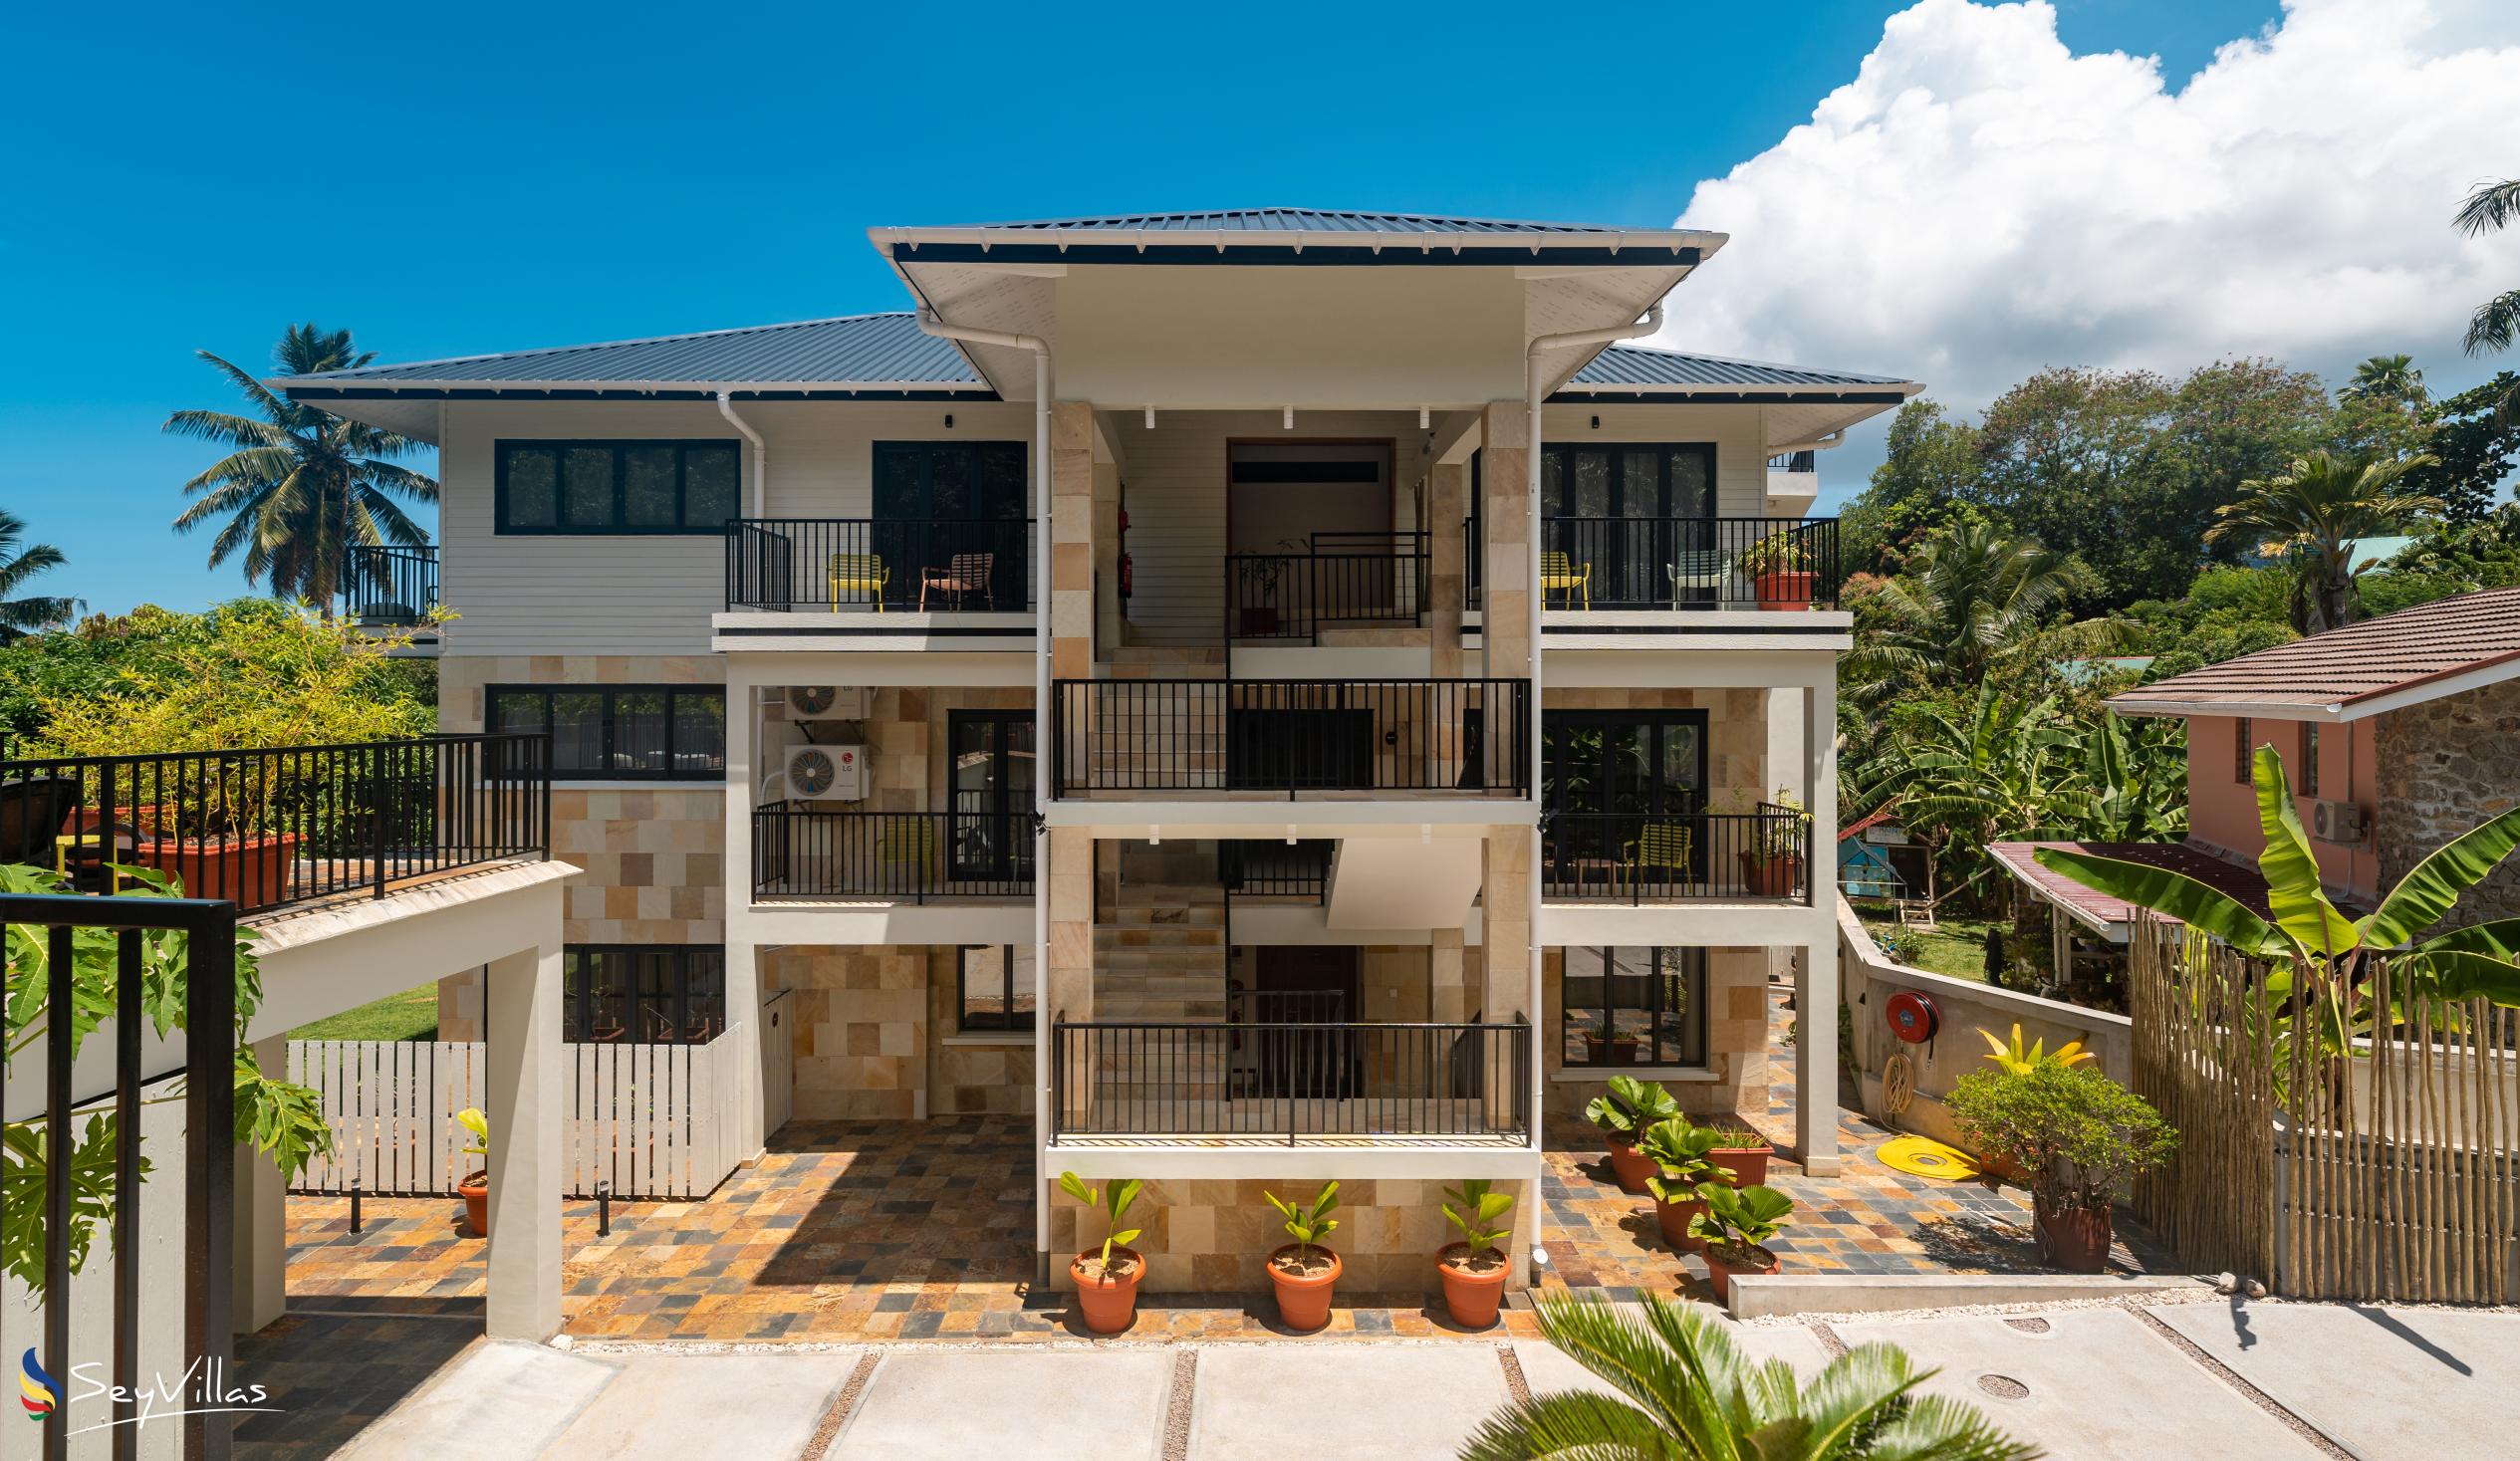 Photo 11: Lodoicea Apartments - Outdoor area - Mahé (Seychelles)